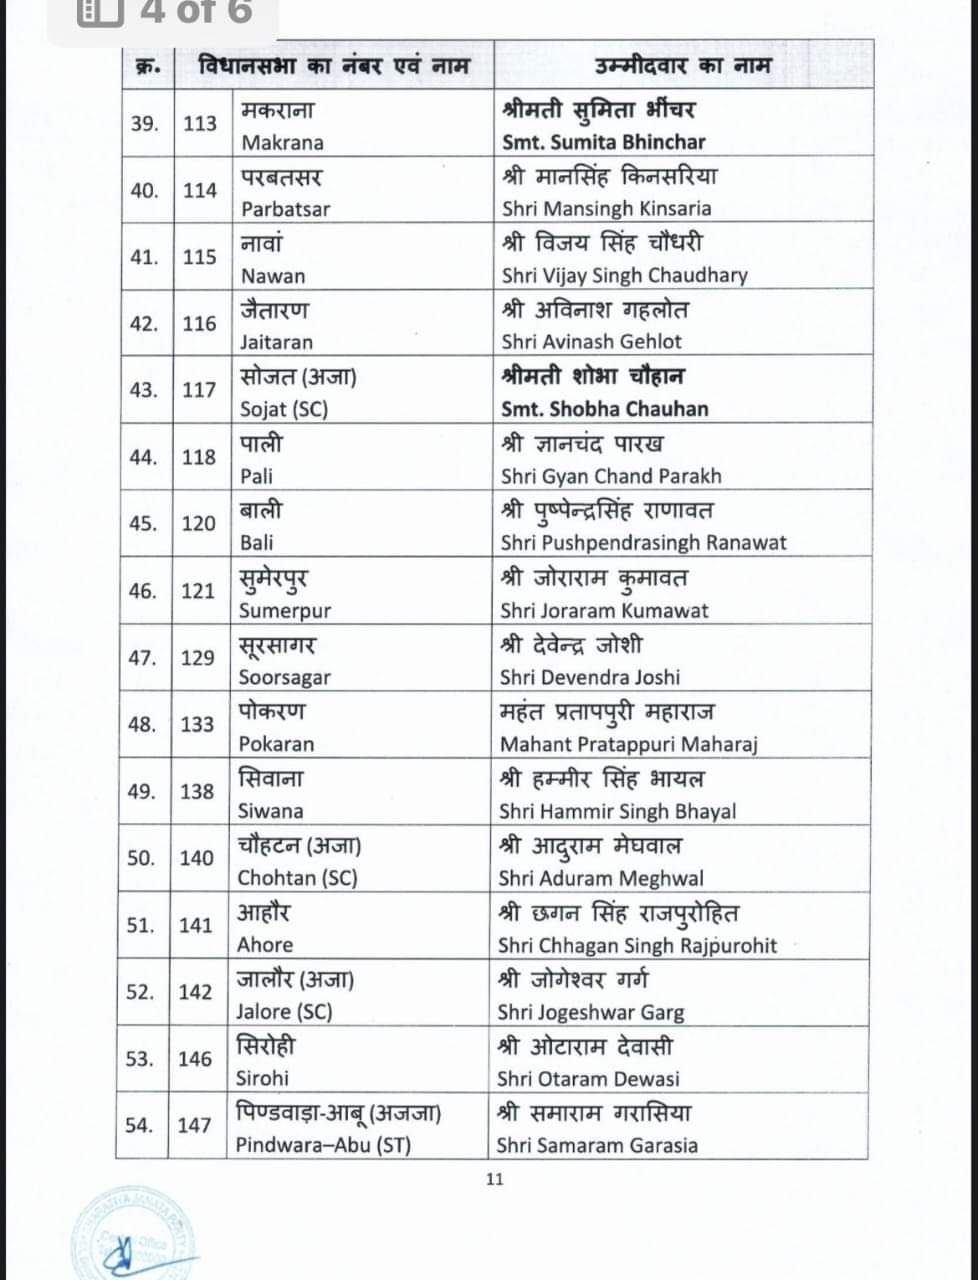 भाजपा ने जारी की राजस्थान की दूसरी सूची, वसुंधरा राजे सहित 83 प्रत्याशियों ने नाम शामिल, यहां देखें किसे कहां से बनाया उम्मीदवार